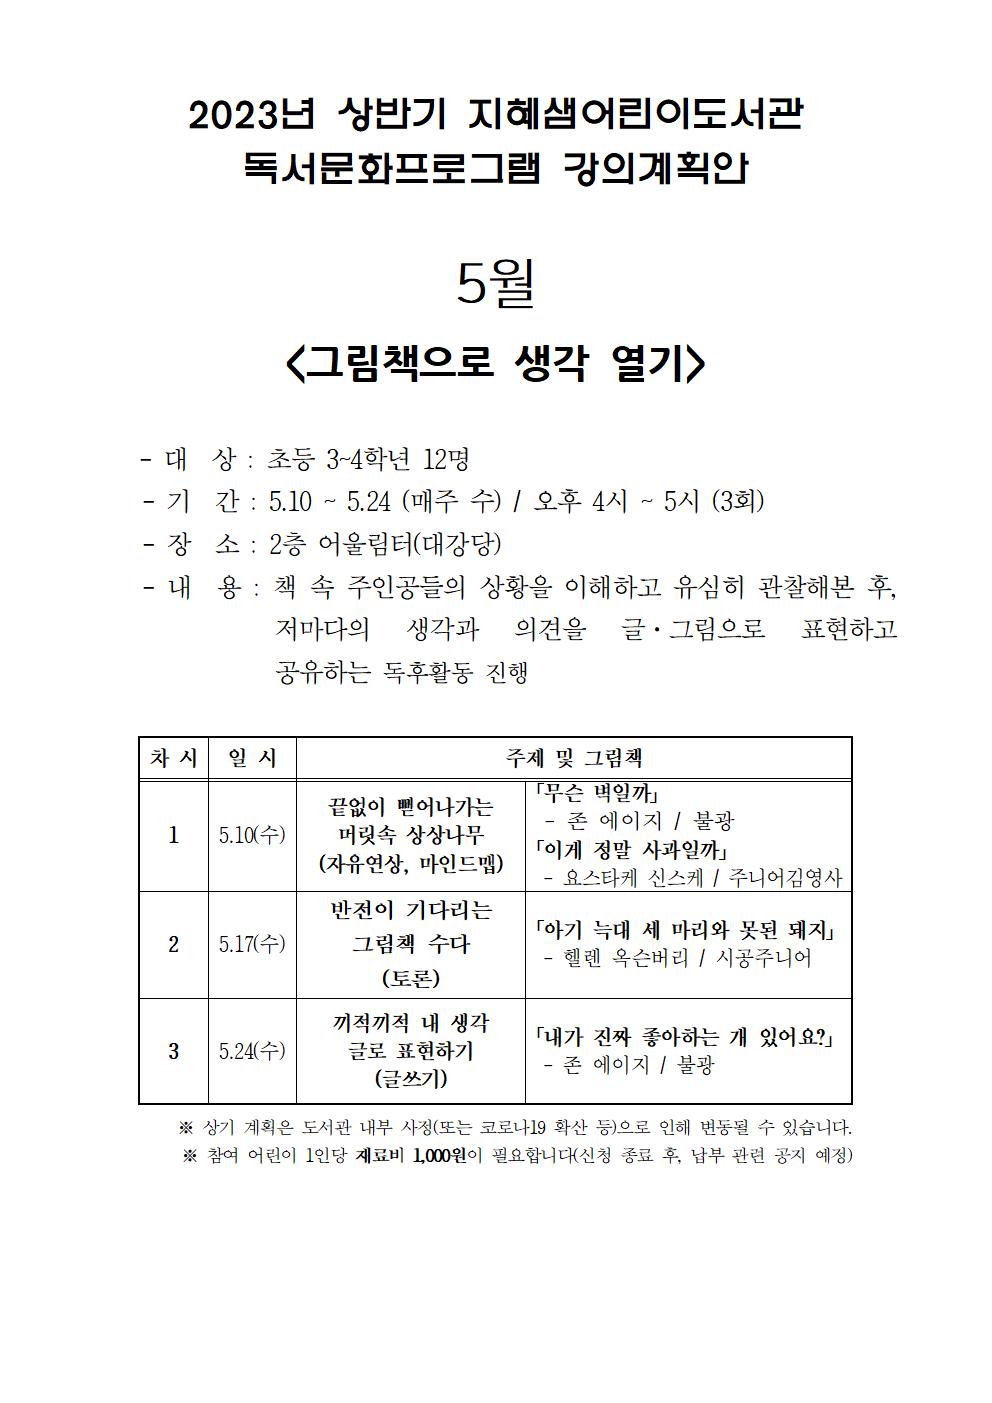 2023년5월지혜샘프로그램운영계획(안)_게시용.jpg